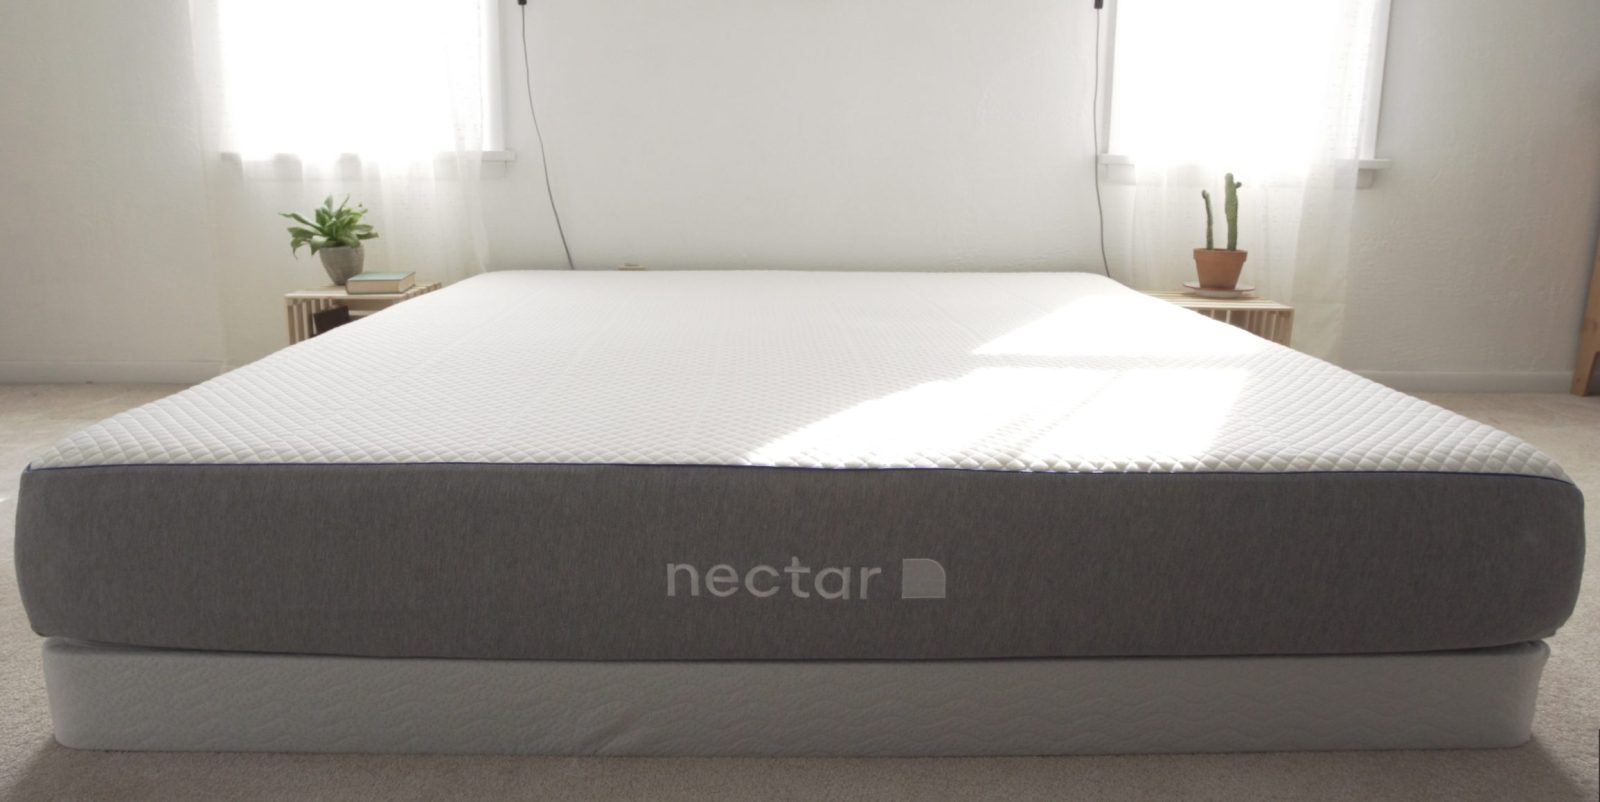 the nectar mattress protector bleach